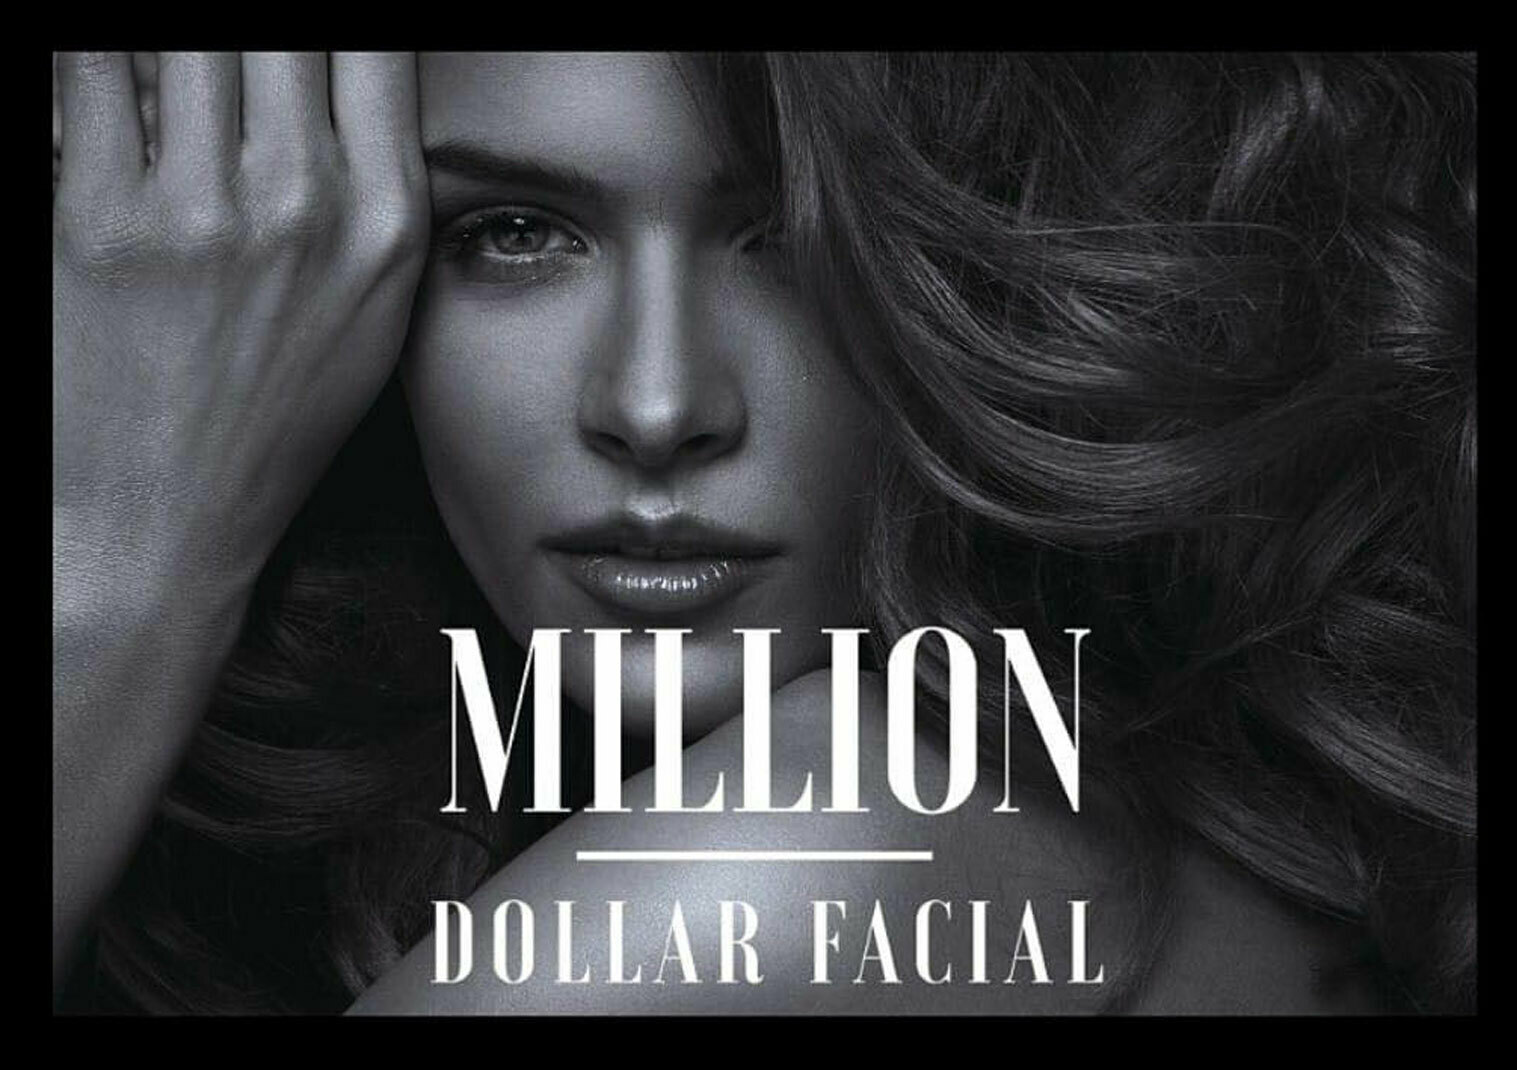 La Femme Beauty 31% off Million Dollar Super Facial Hydrate & Glow